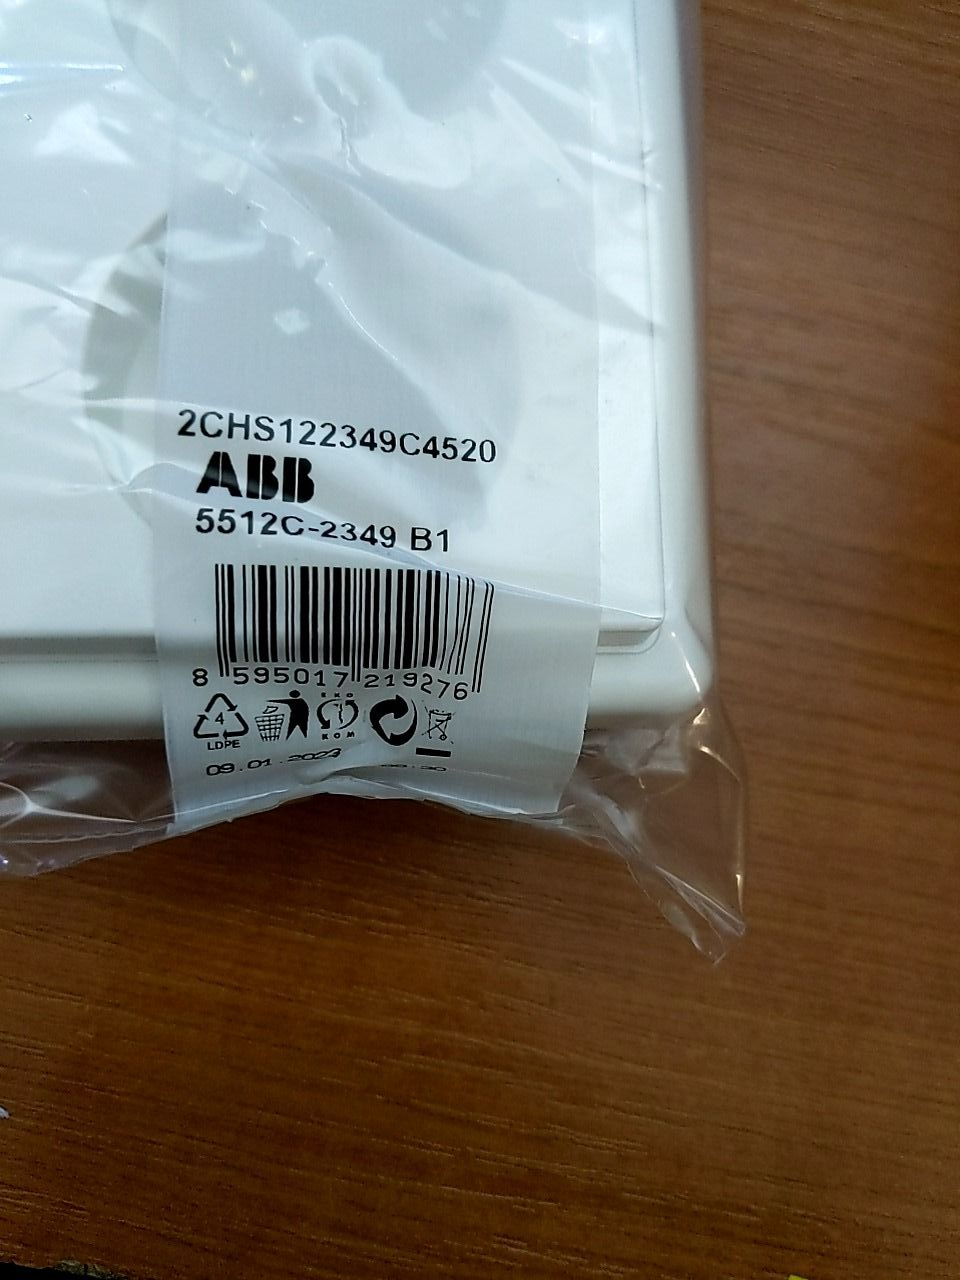 ABB Classic dvojzásuvka jasně bílá - sada ABB 